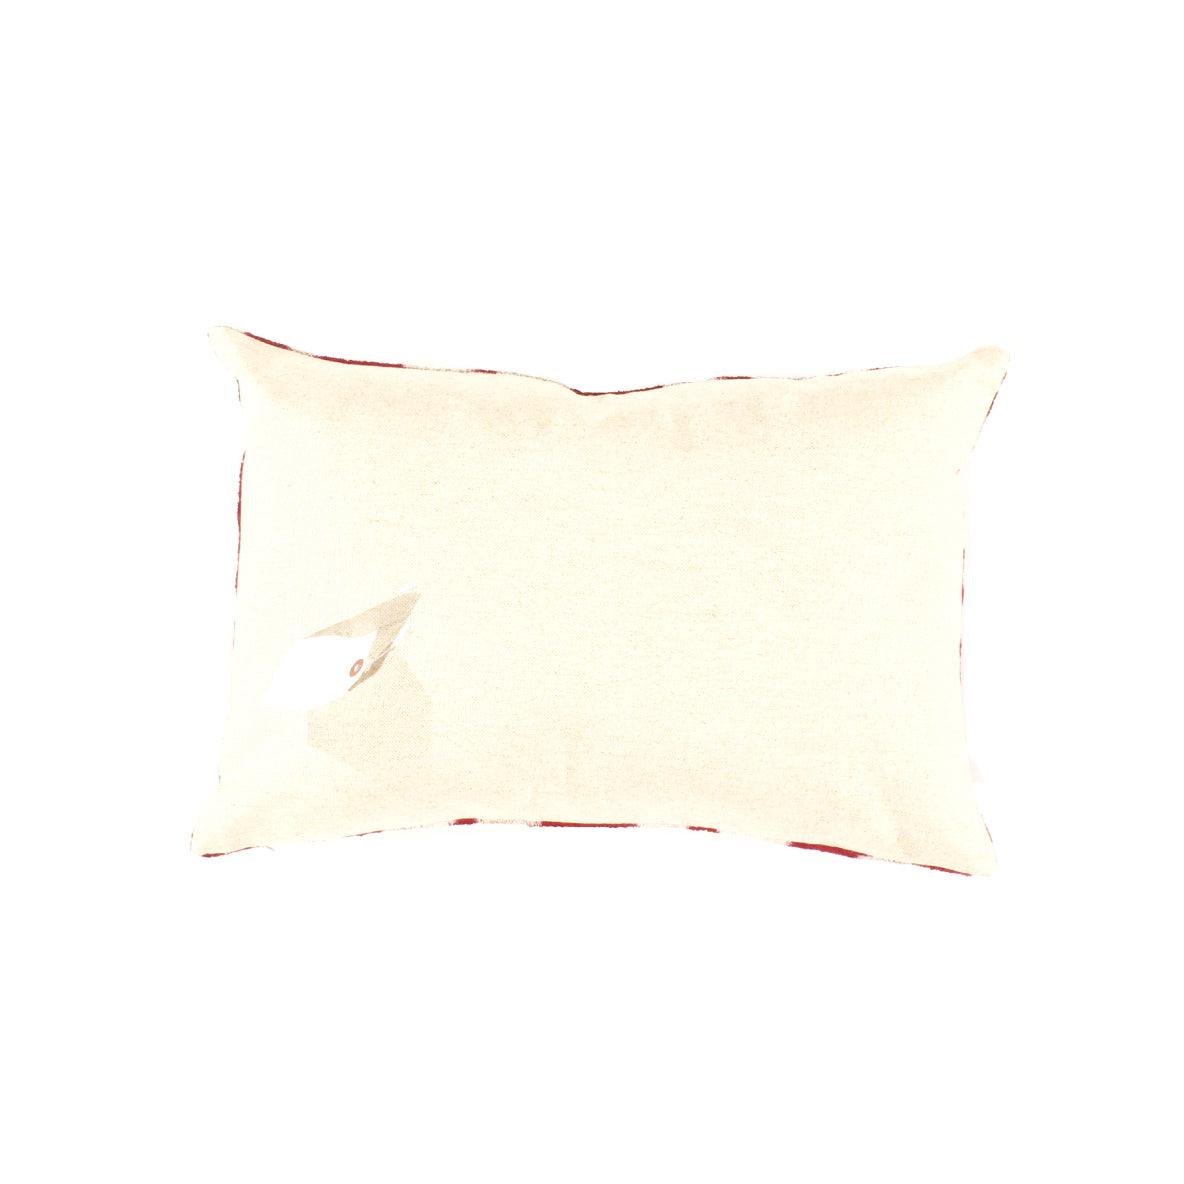 Canvello Red White Designer Ikat Velvet Throw Pillow - 16" X 24"